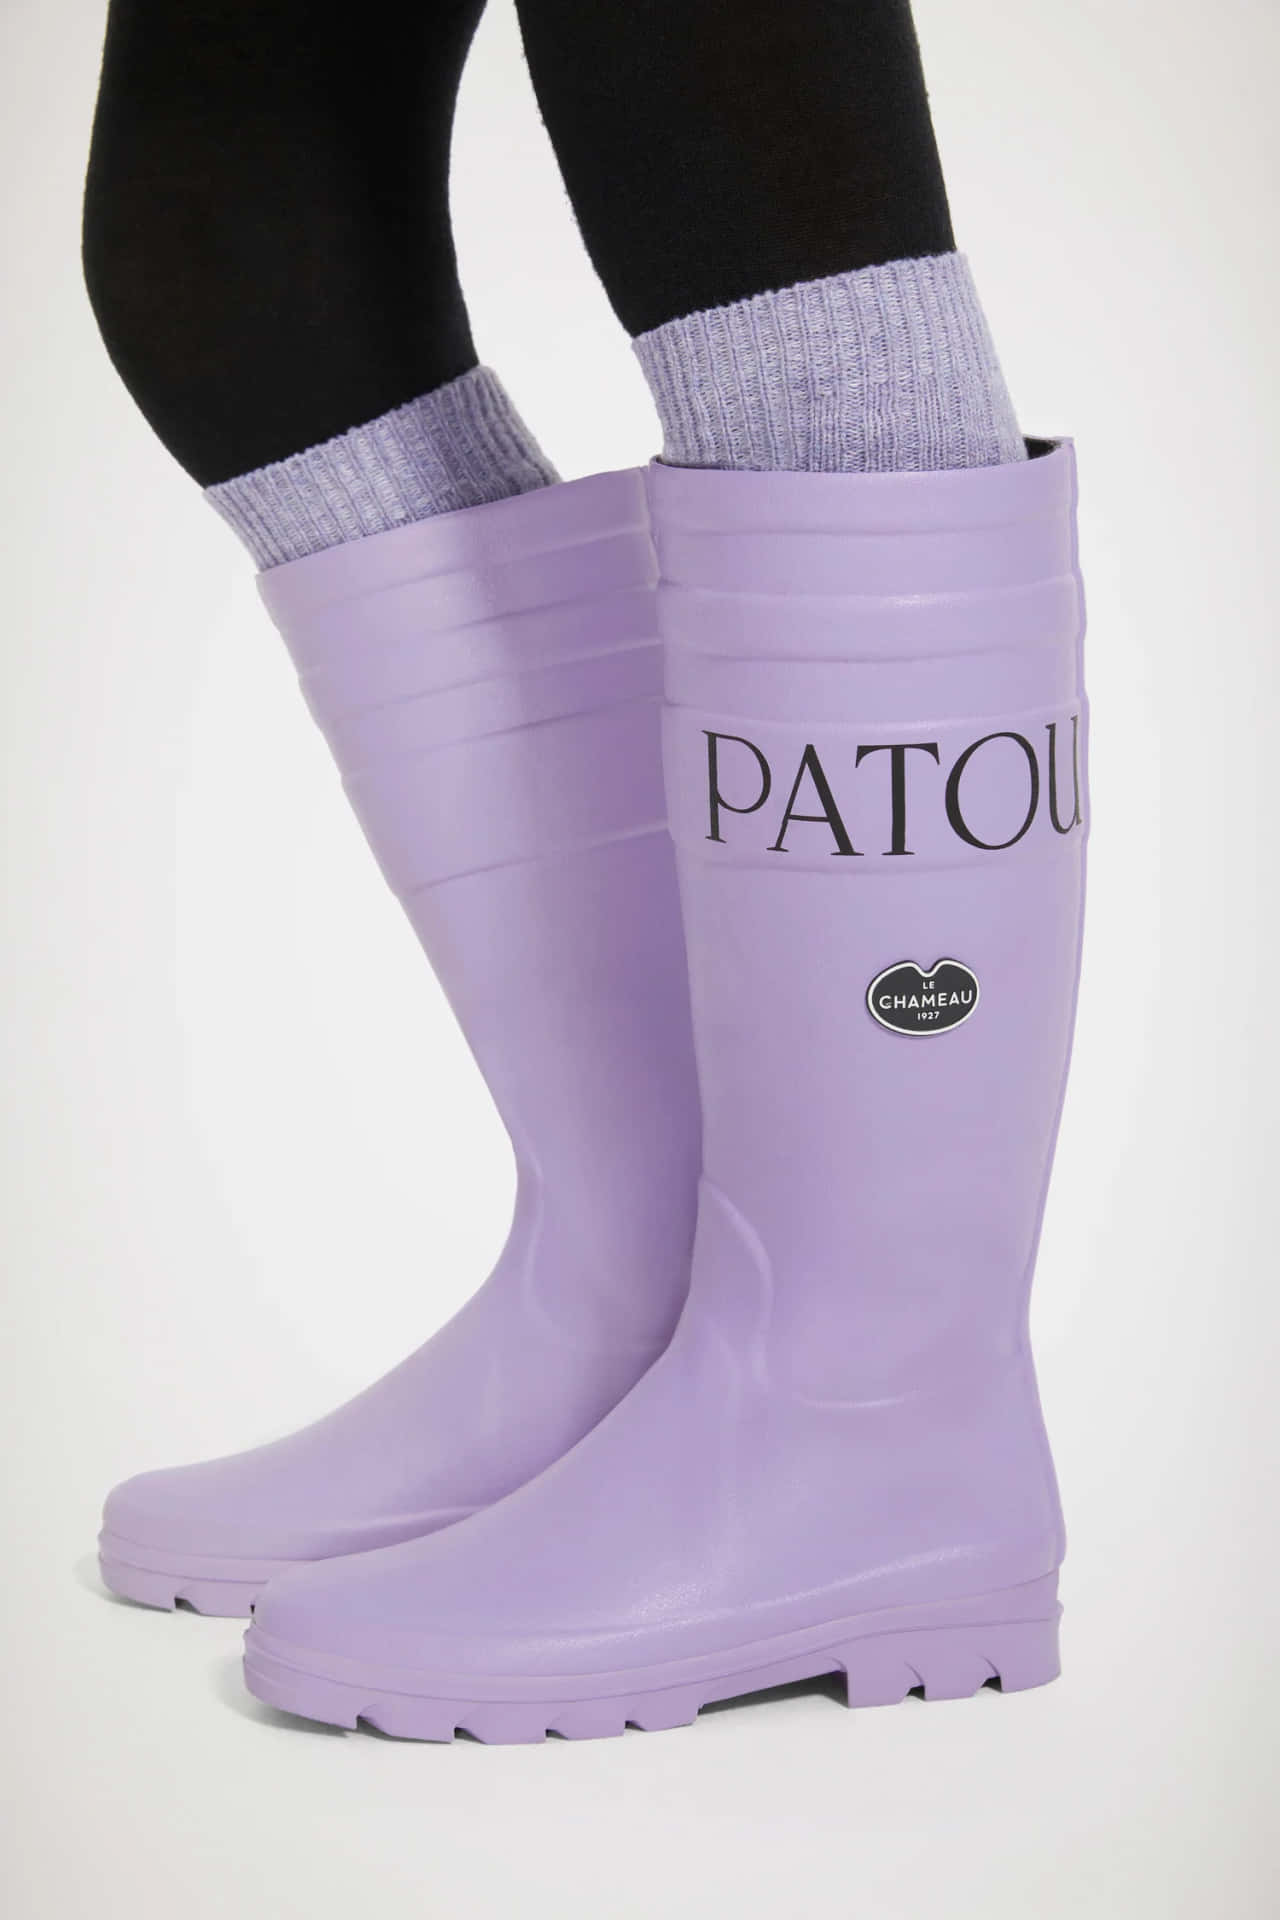 Patou X Le Chameau Purple Boots Wallpaper